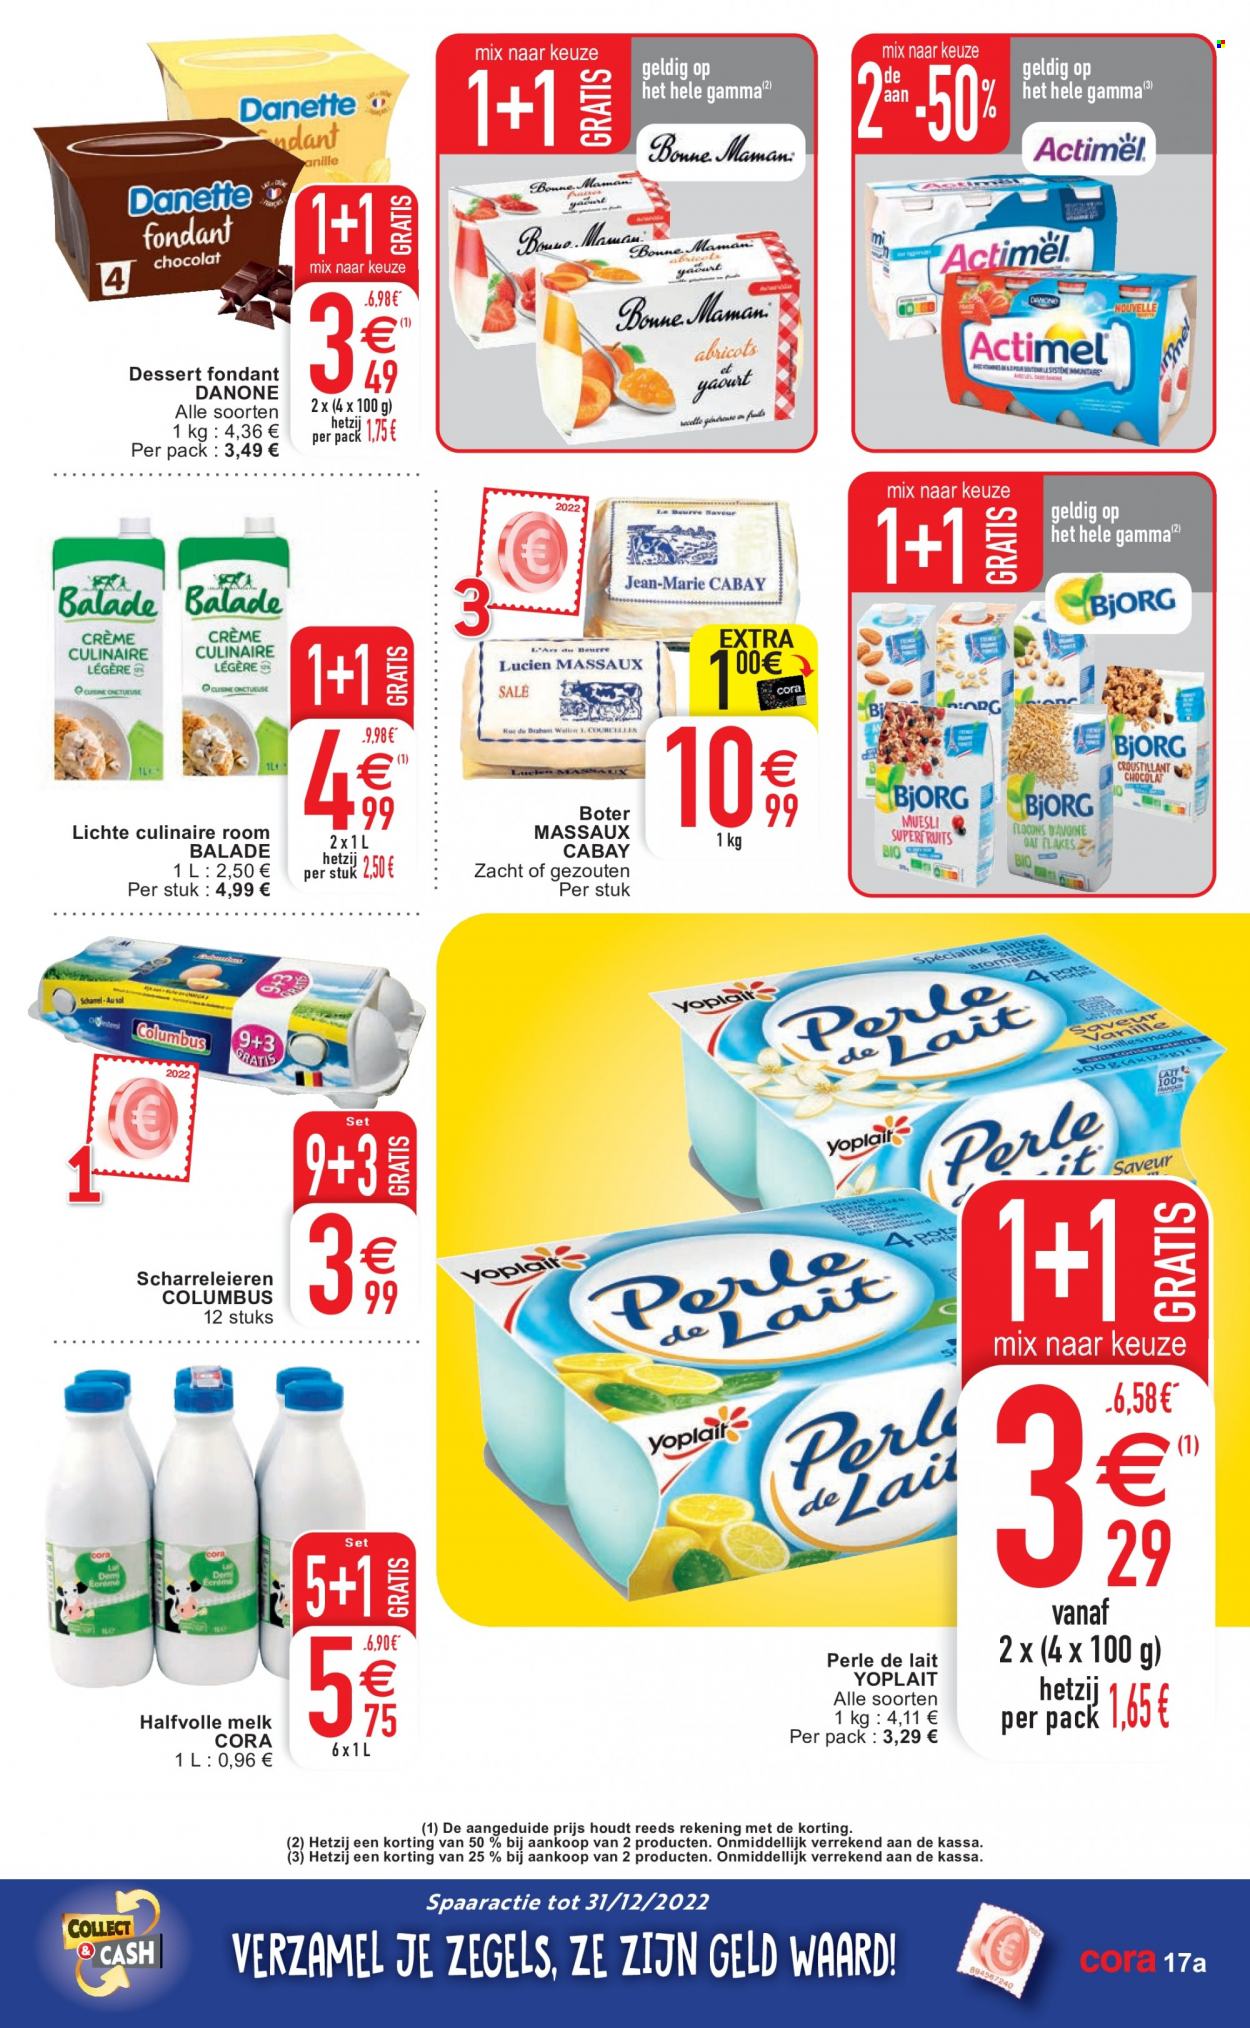 thumbnail - Cora-aanbieding - 22/11/2022 - 28/11/2022 -  producten in de aanbieding - Danone, melk, room, Gamma. Pagina 17.